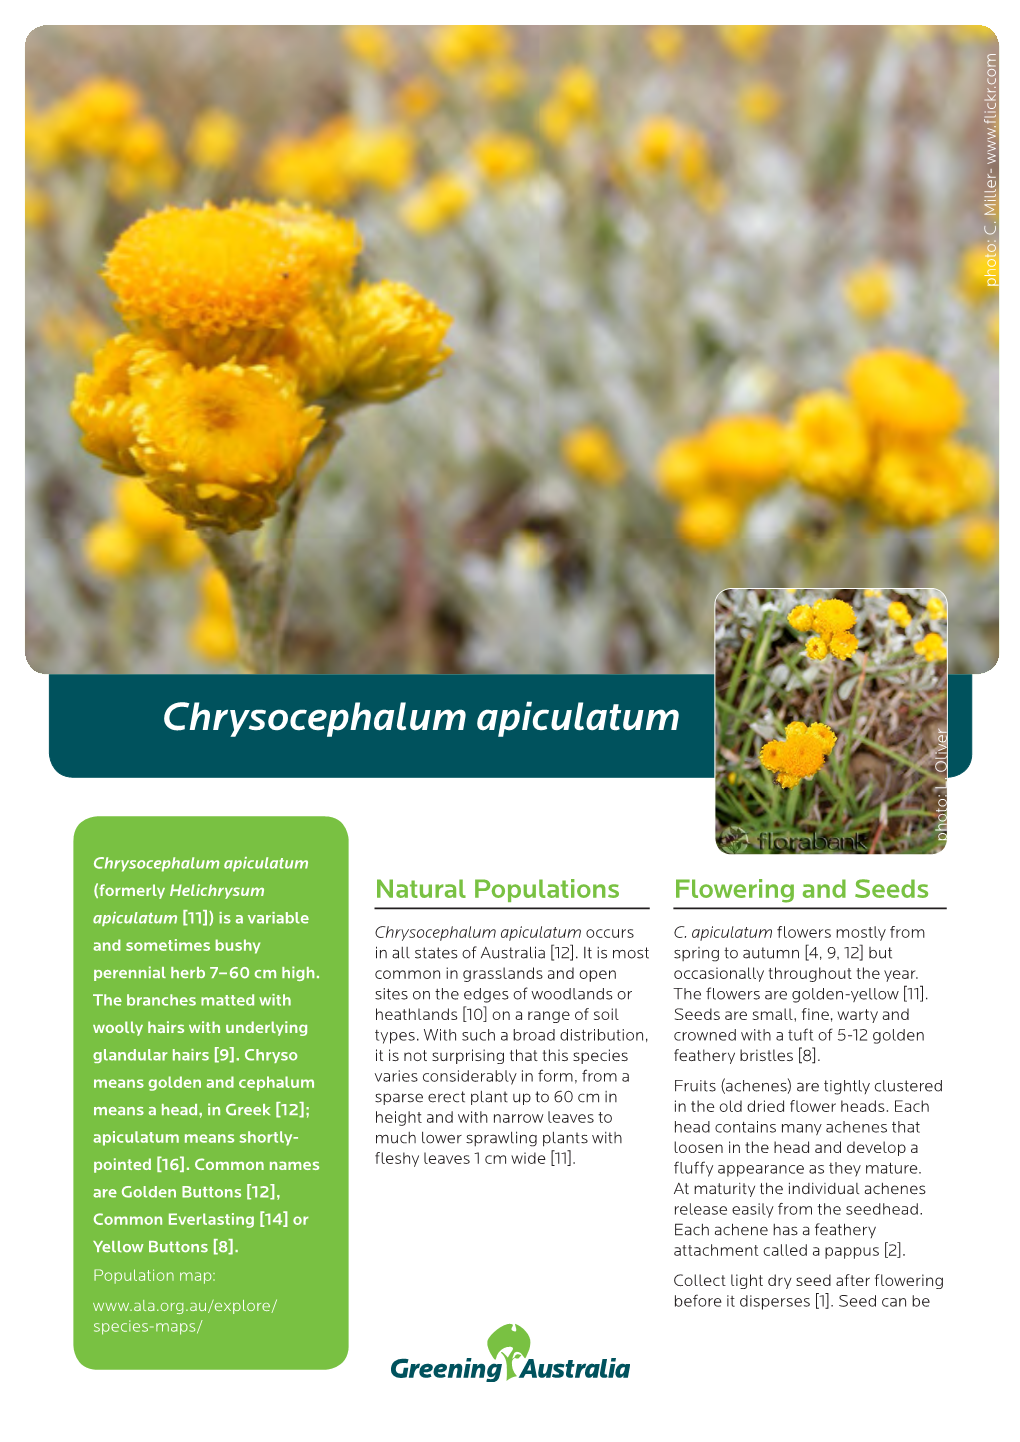 Chrysocephalum Apiculatum Photo: L